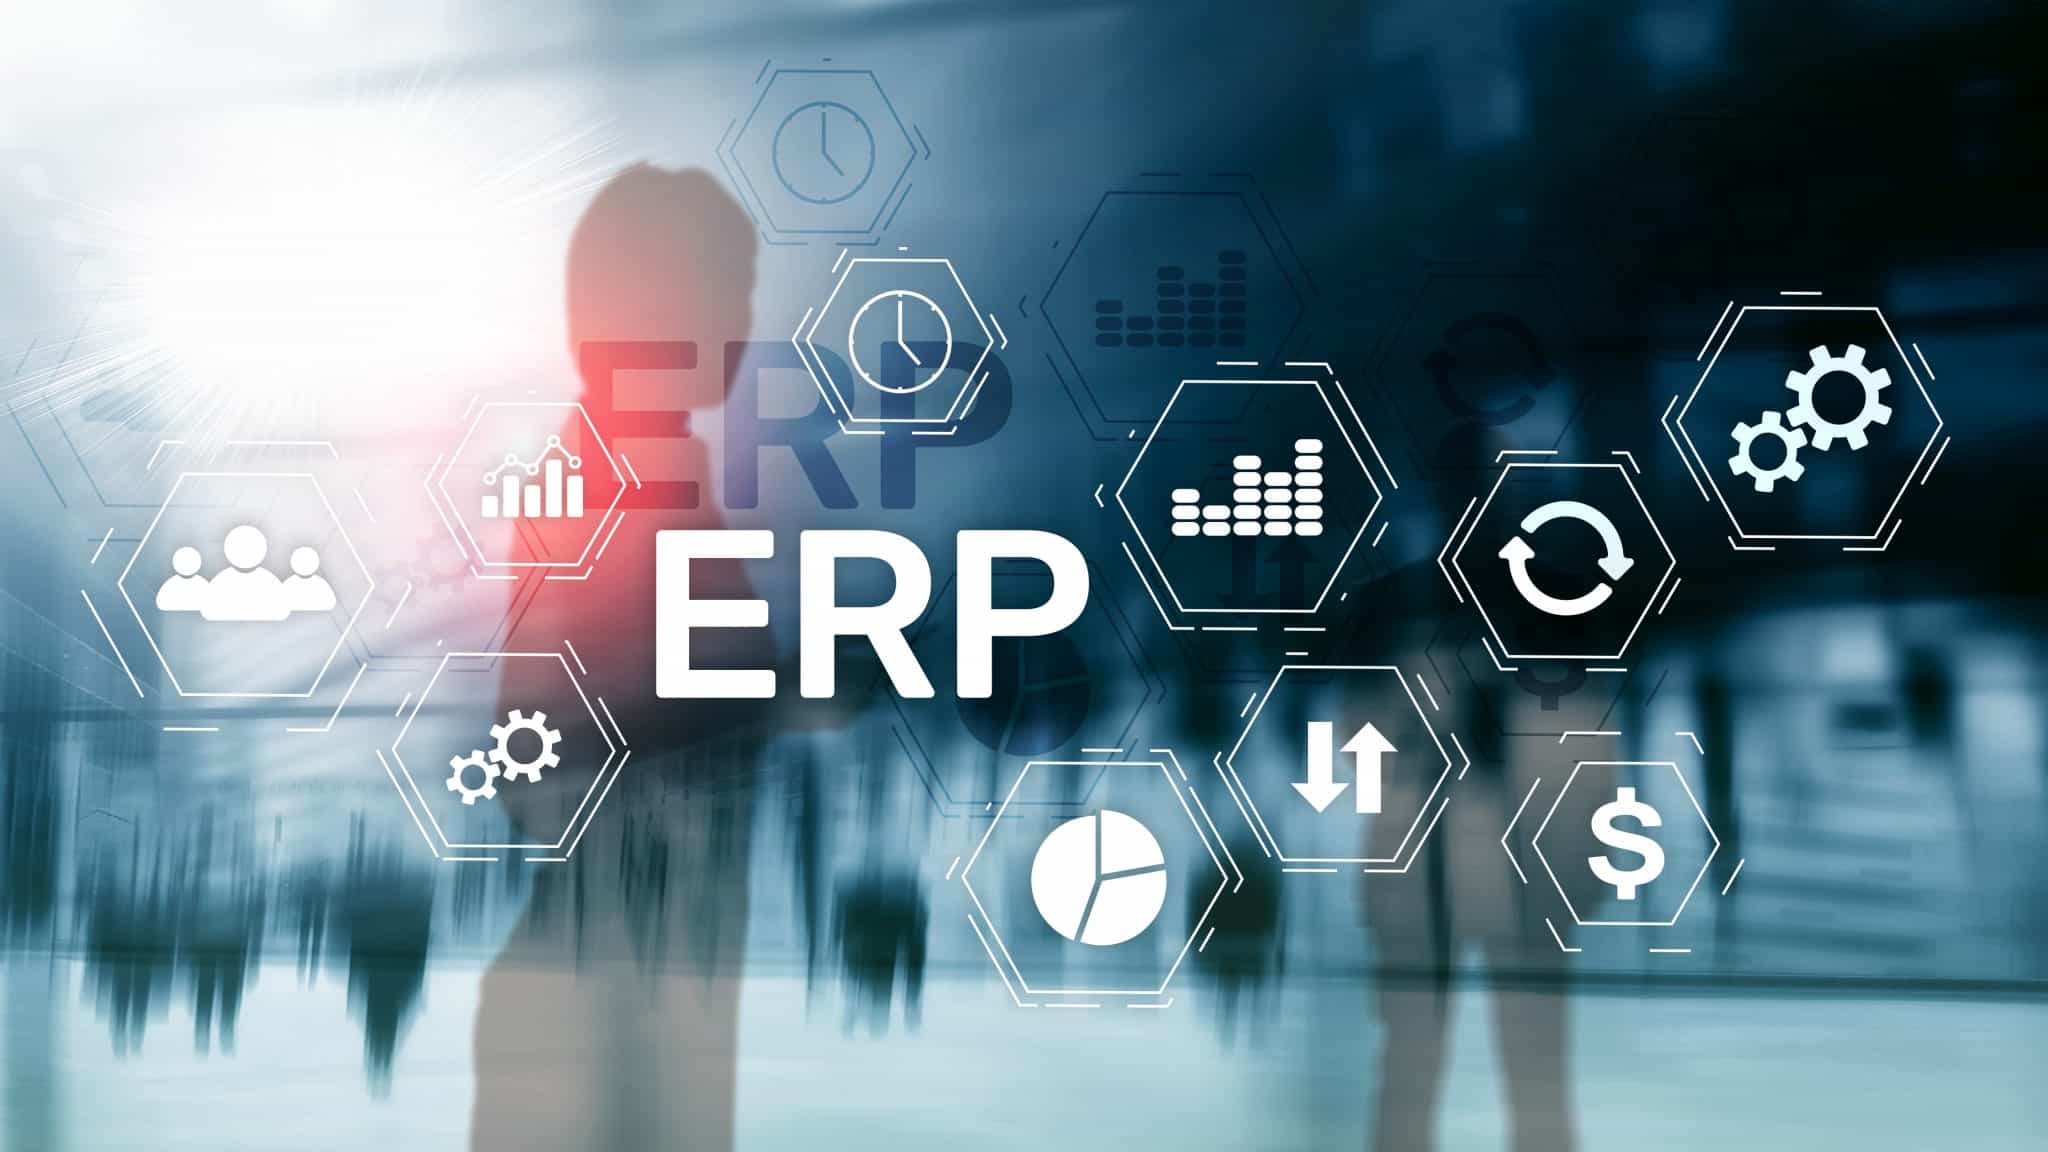 西安外贸企业,西安外贸ERP系统,西安外贸企业管理软件,SAP系统,ERP系统,西安SAP代理商,西安ERP,重庆达策